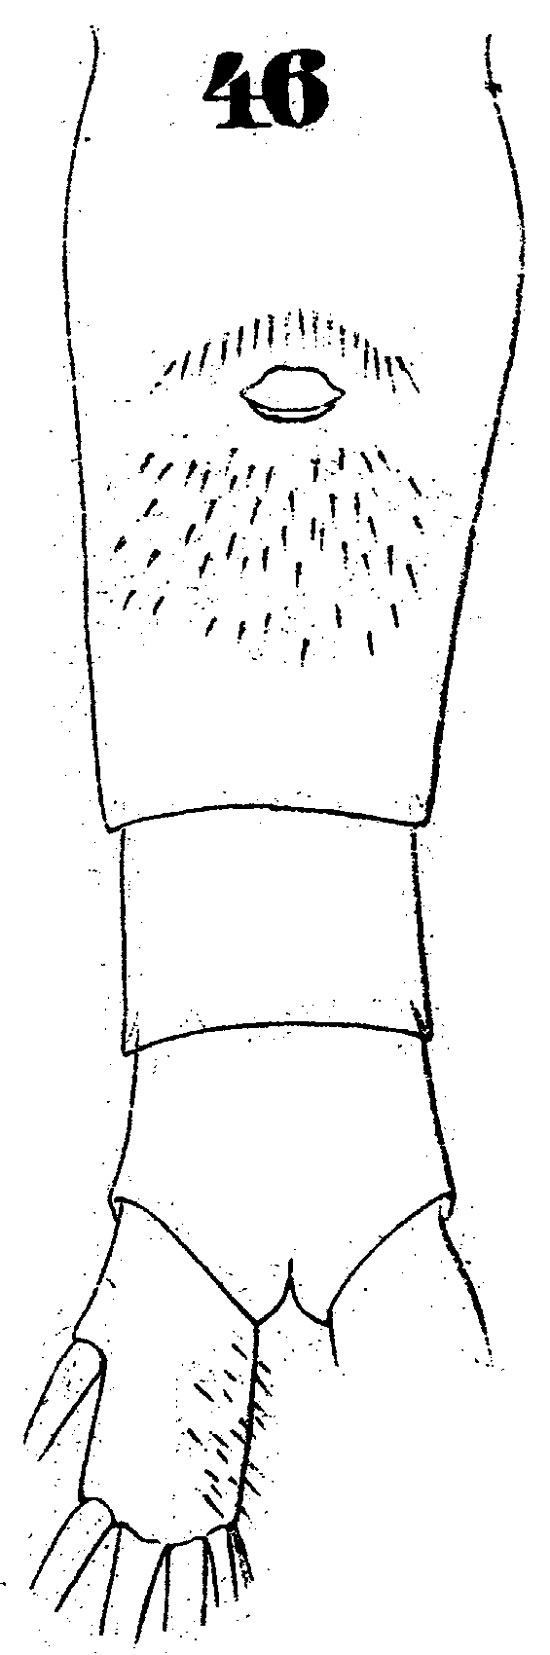 Espce Euaugaptilus bullifer - Planche 7 de figures morphologiques